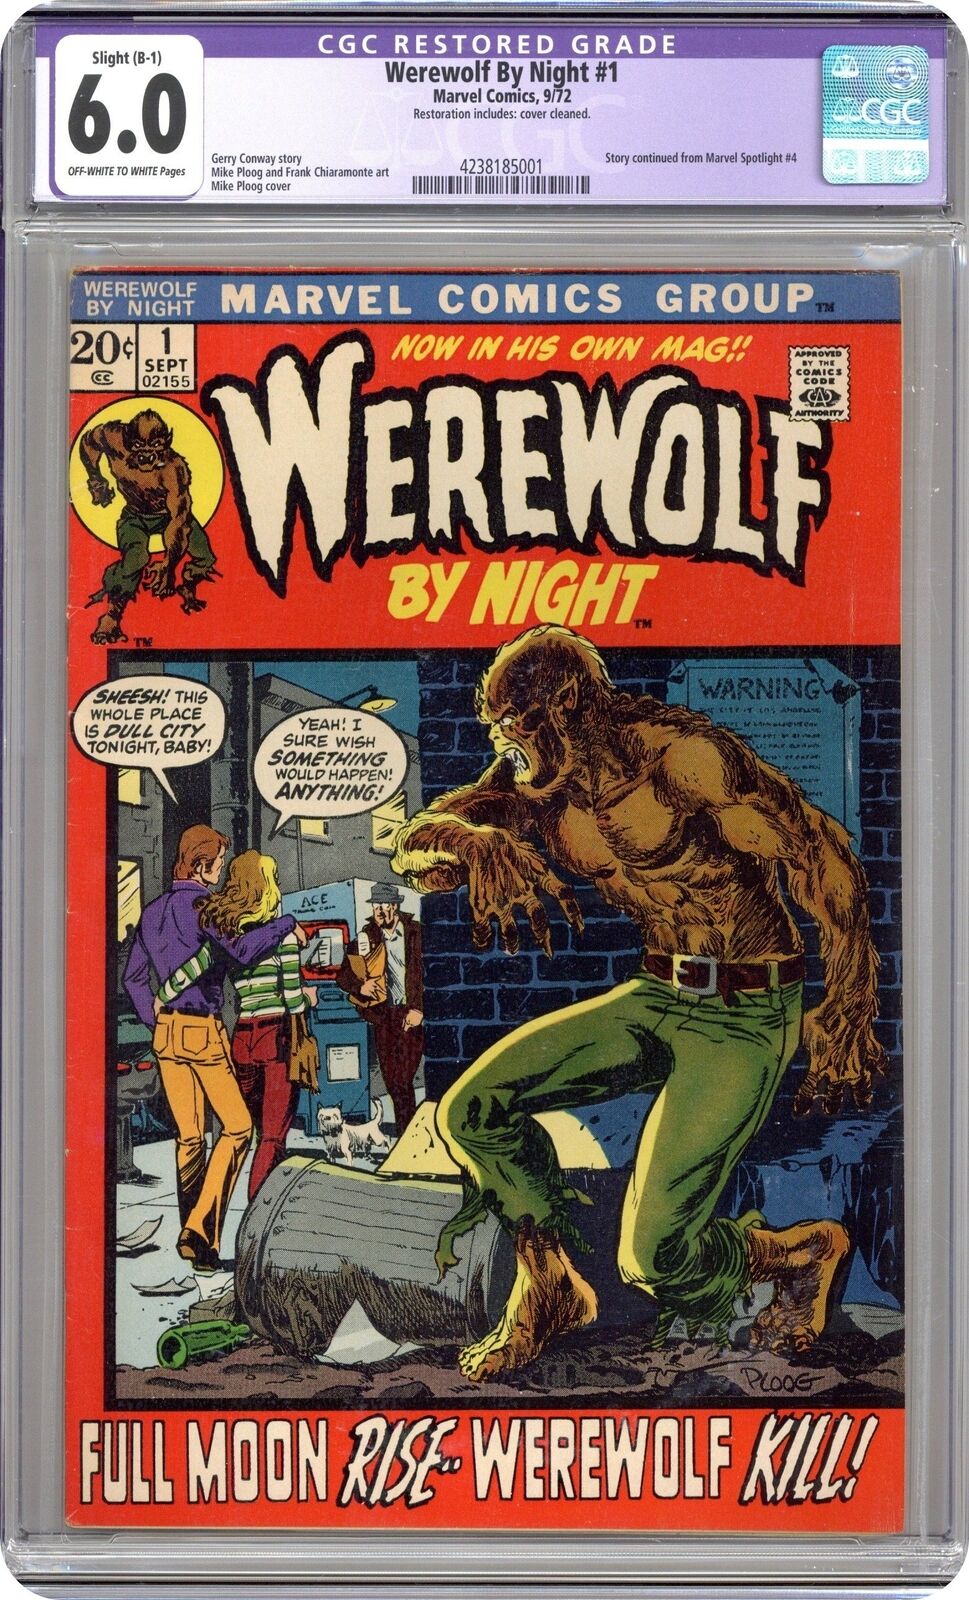 Werewolf by Night #1 CGC 6.0 RESTORED 1972 4238185001